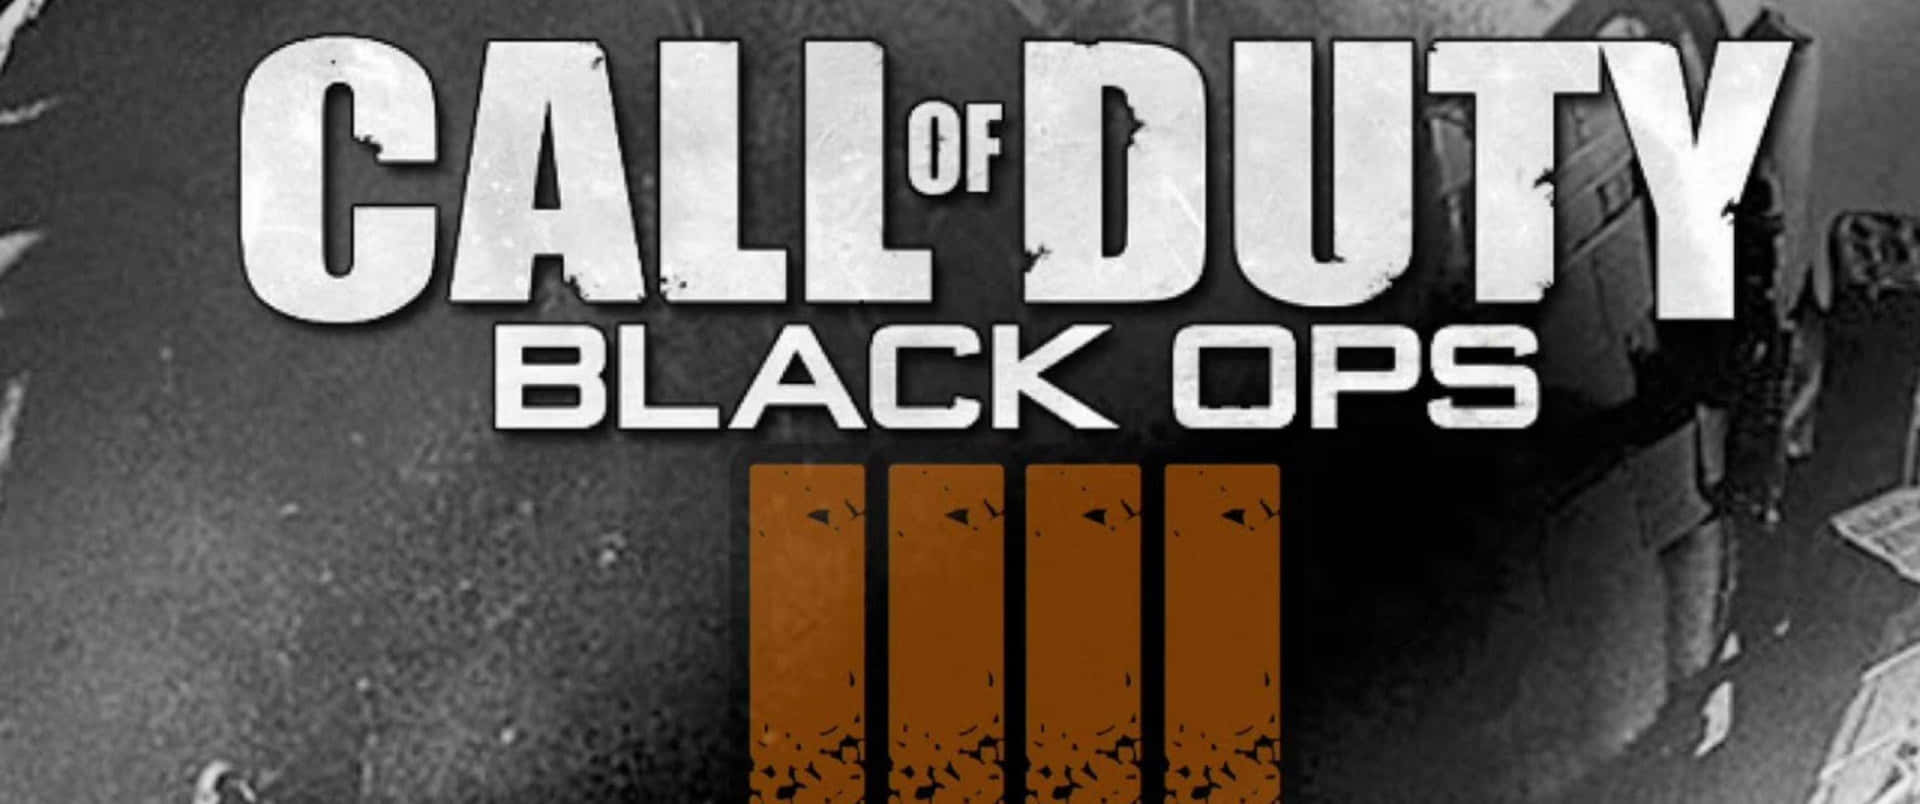 Callof Duty: Black Ops 4, Pronto Per Giocare!